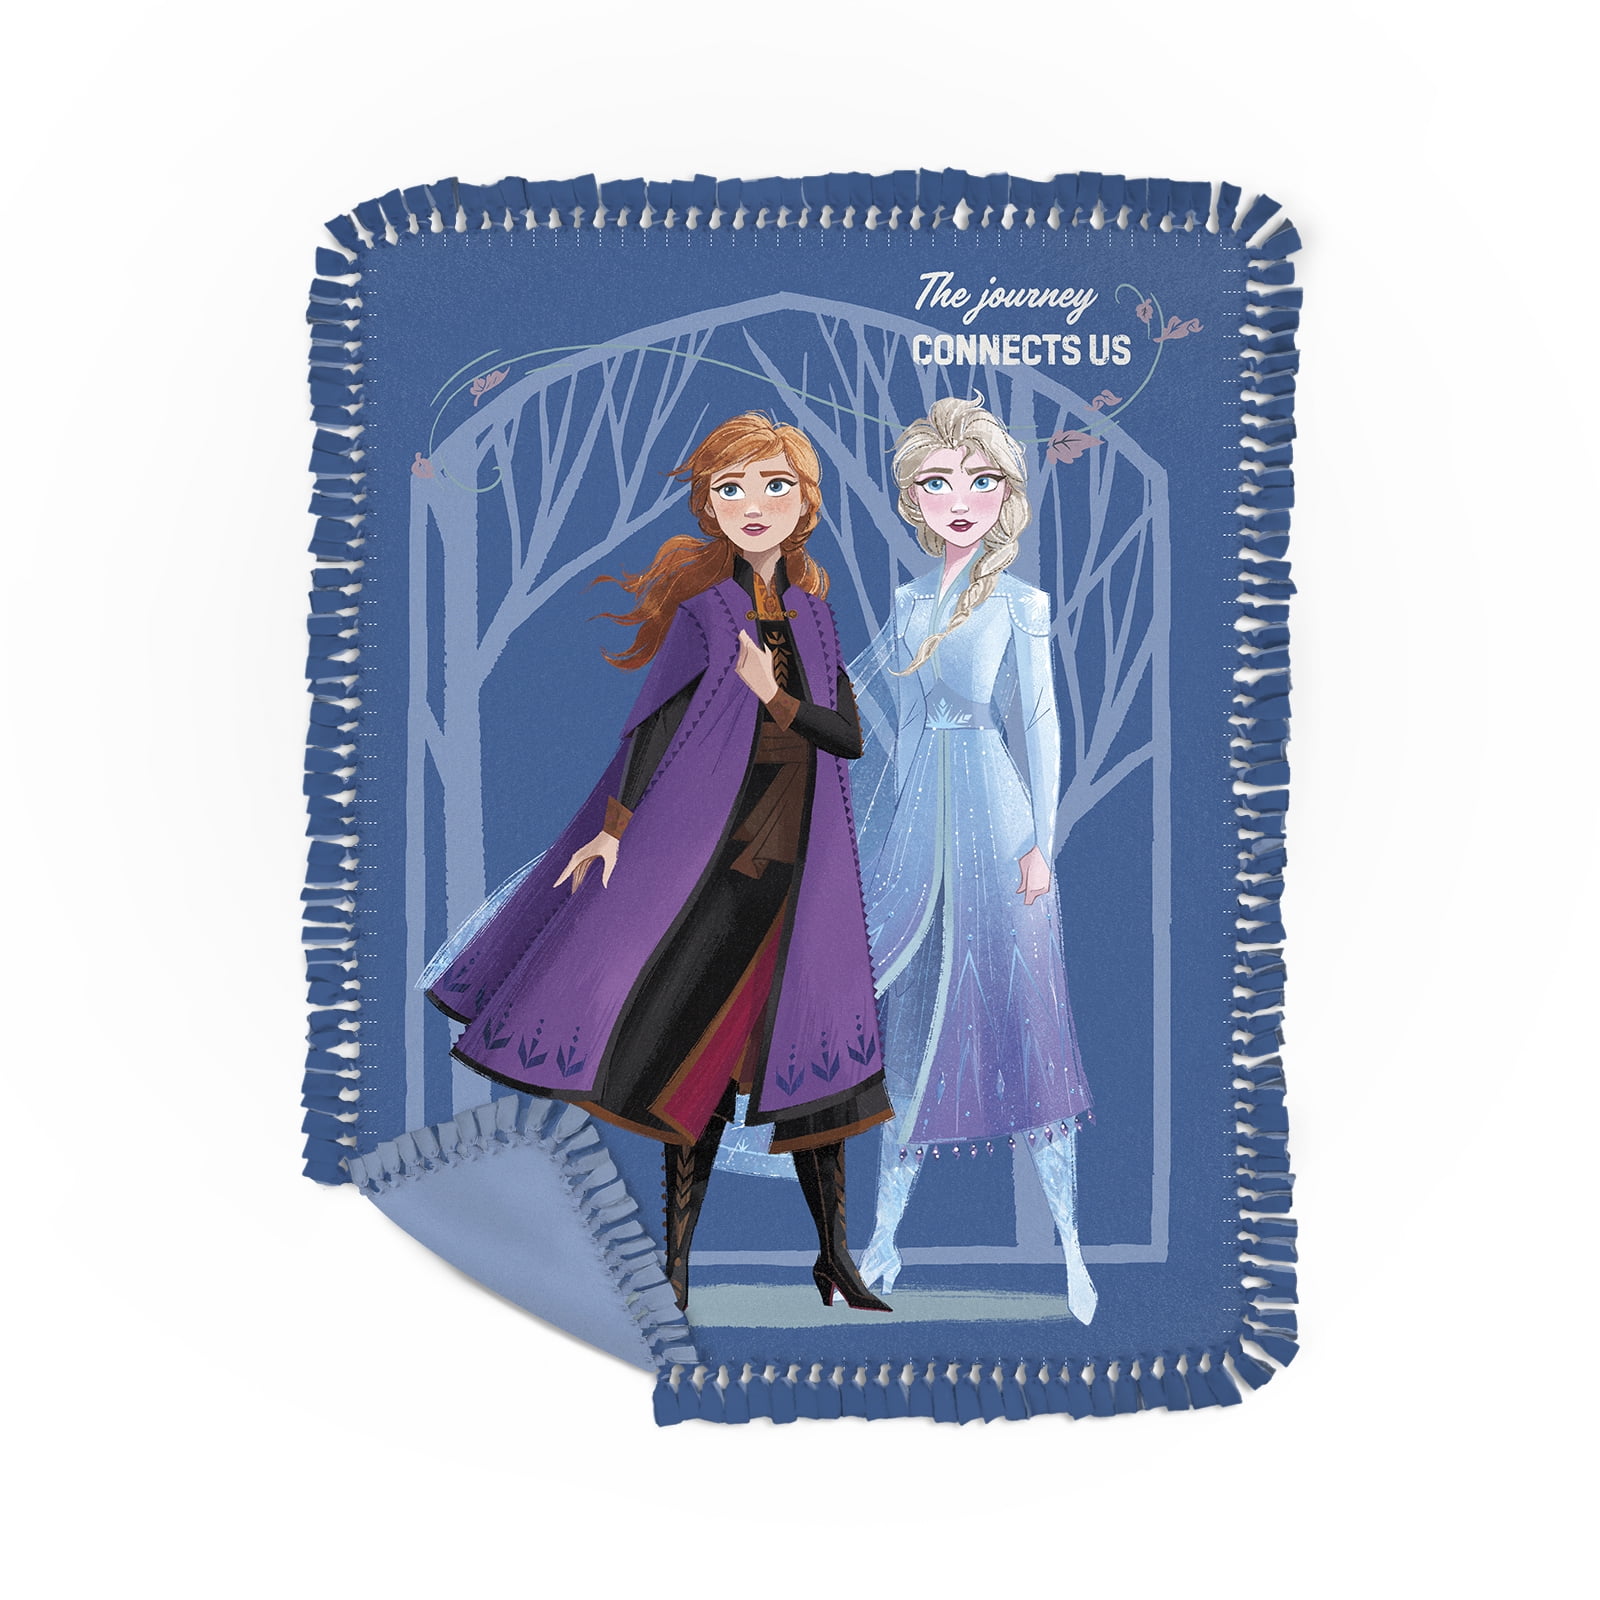 Disney's Frozen No-Sew Fleece Blanket tutorial – Fons & Porter